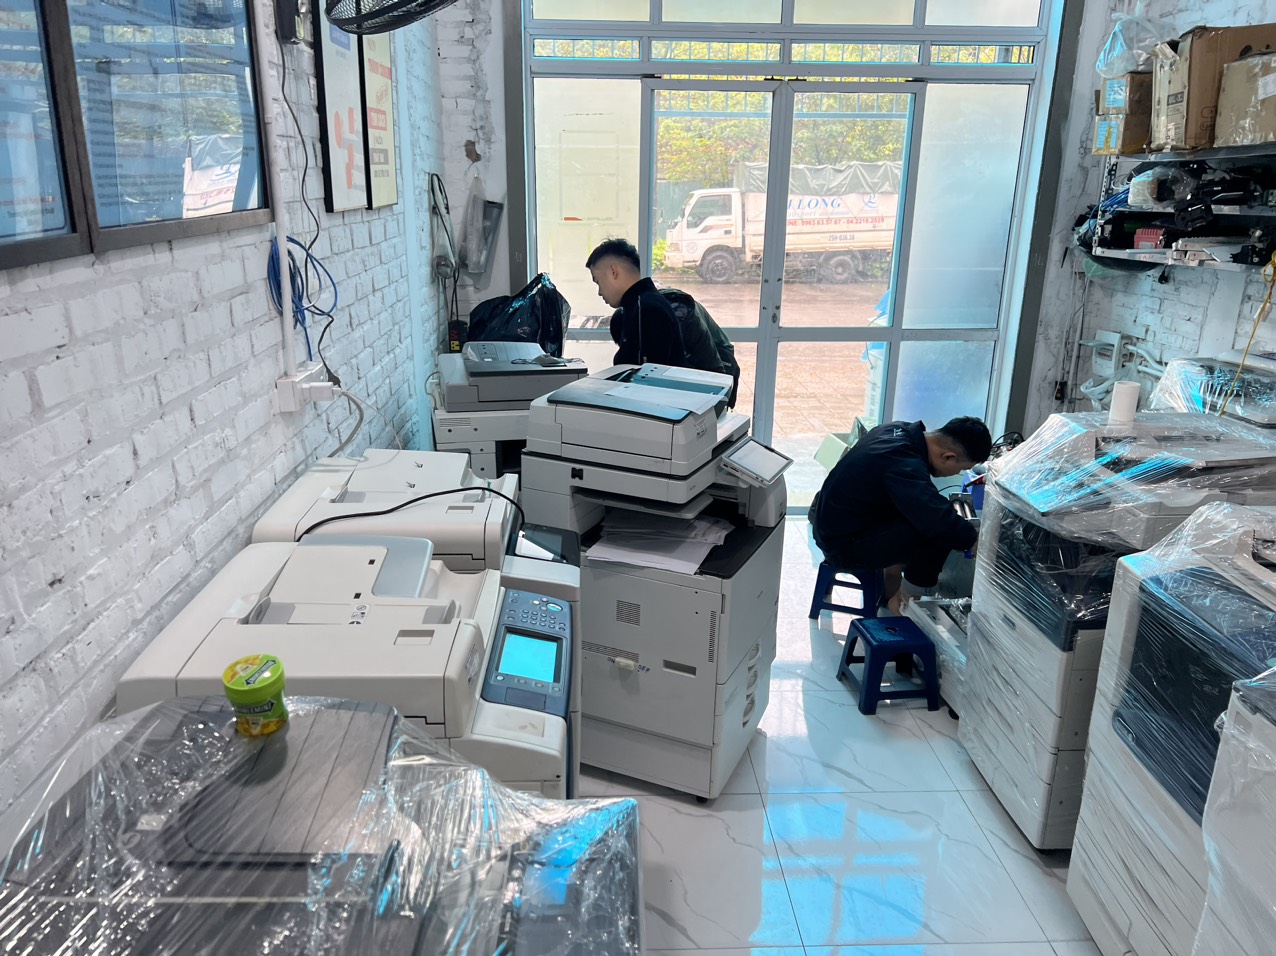 Thanh Bình cung cấp dịch vụ cho thuê máy photocopy tại Hà Nội.